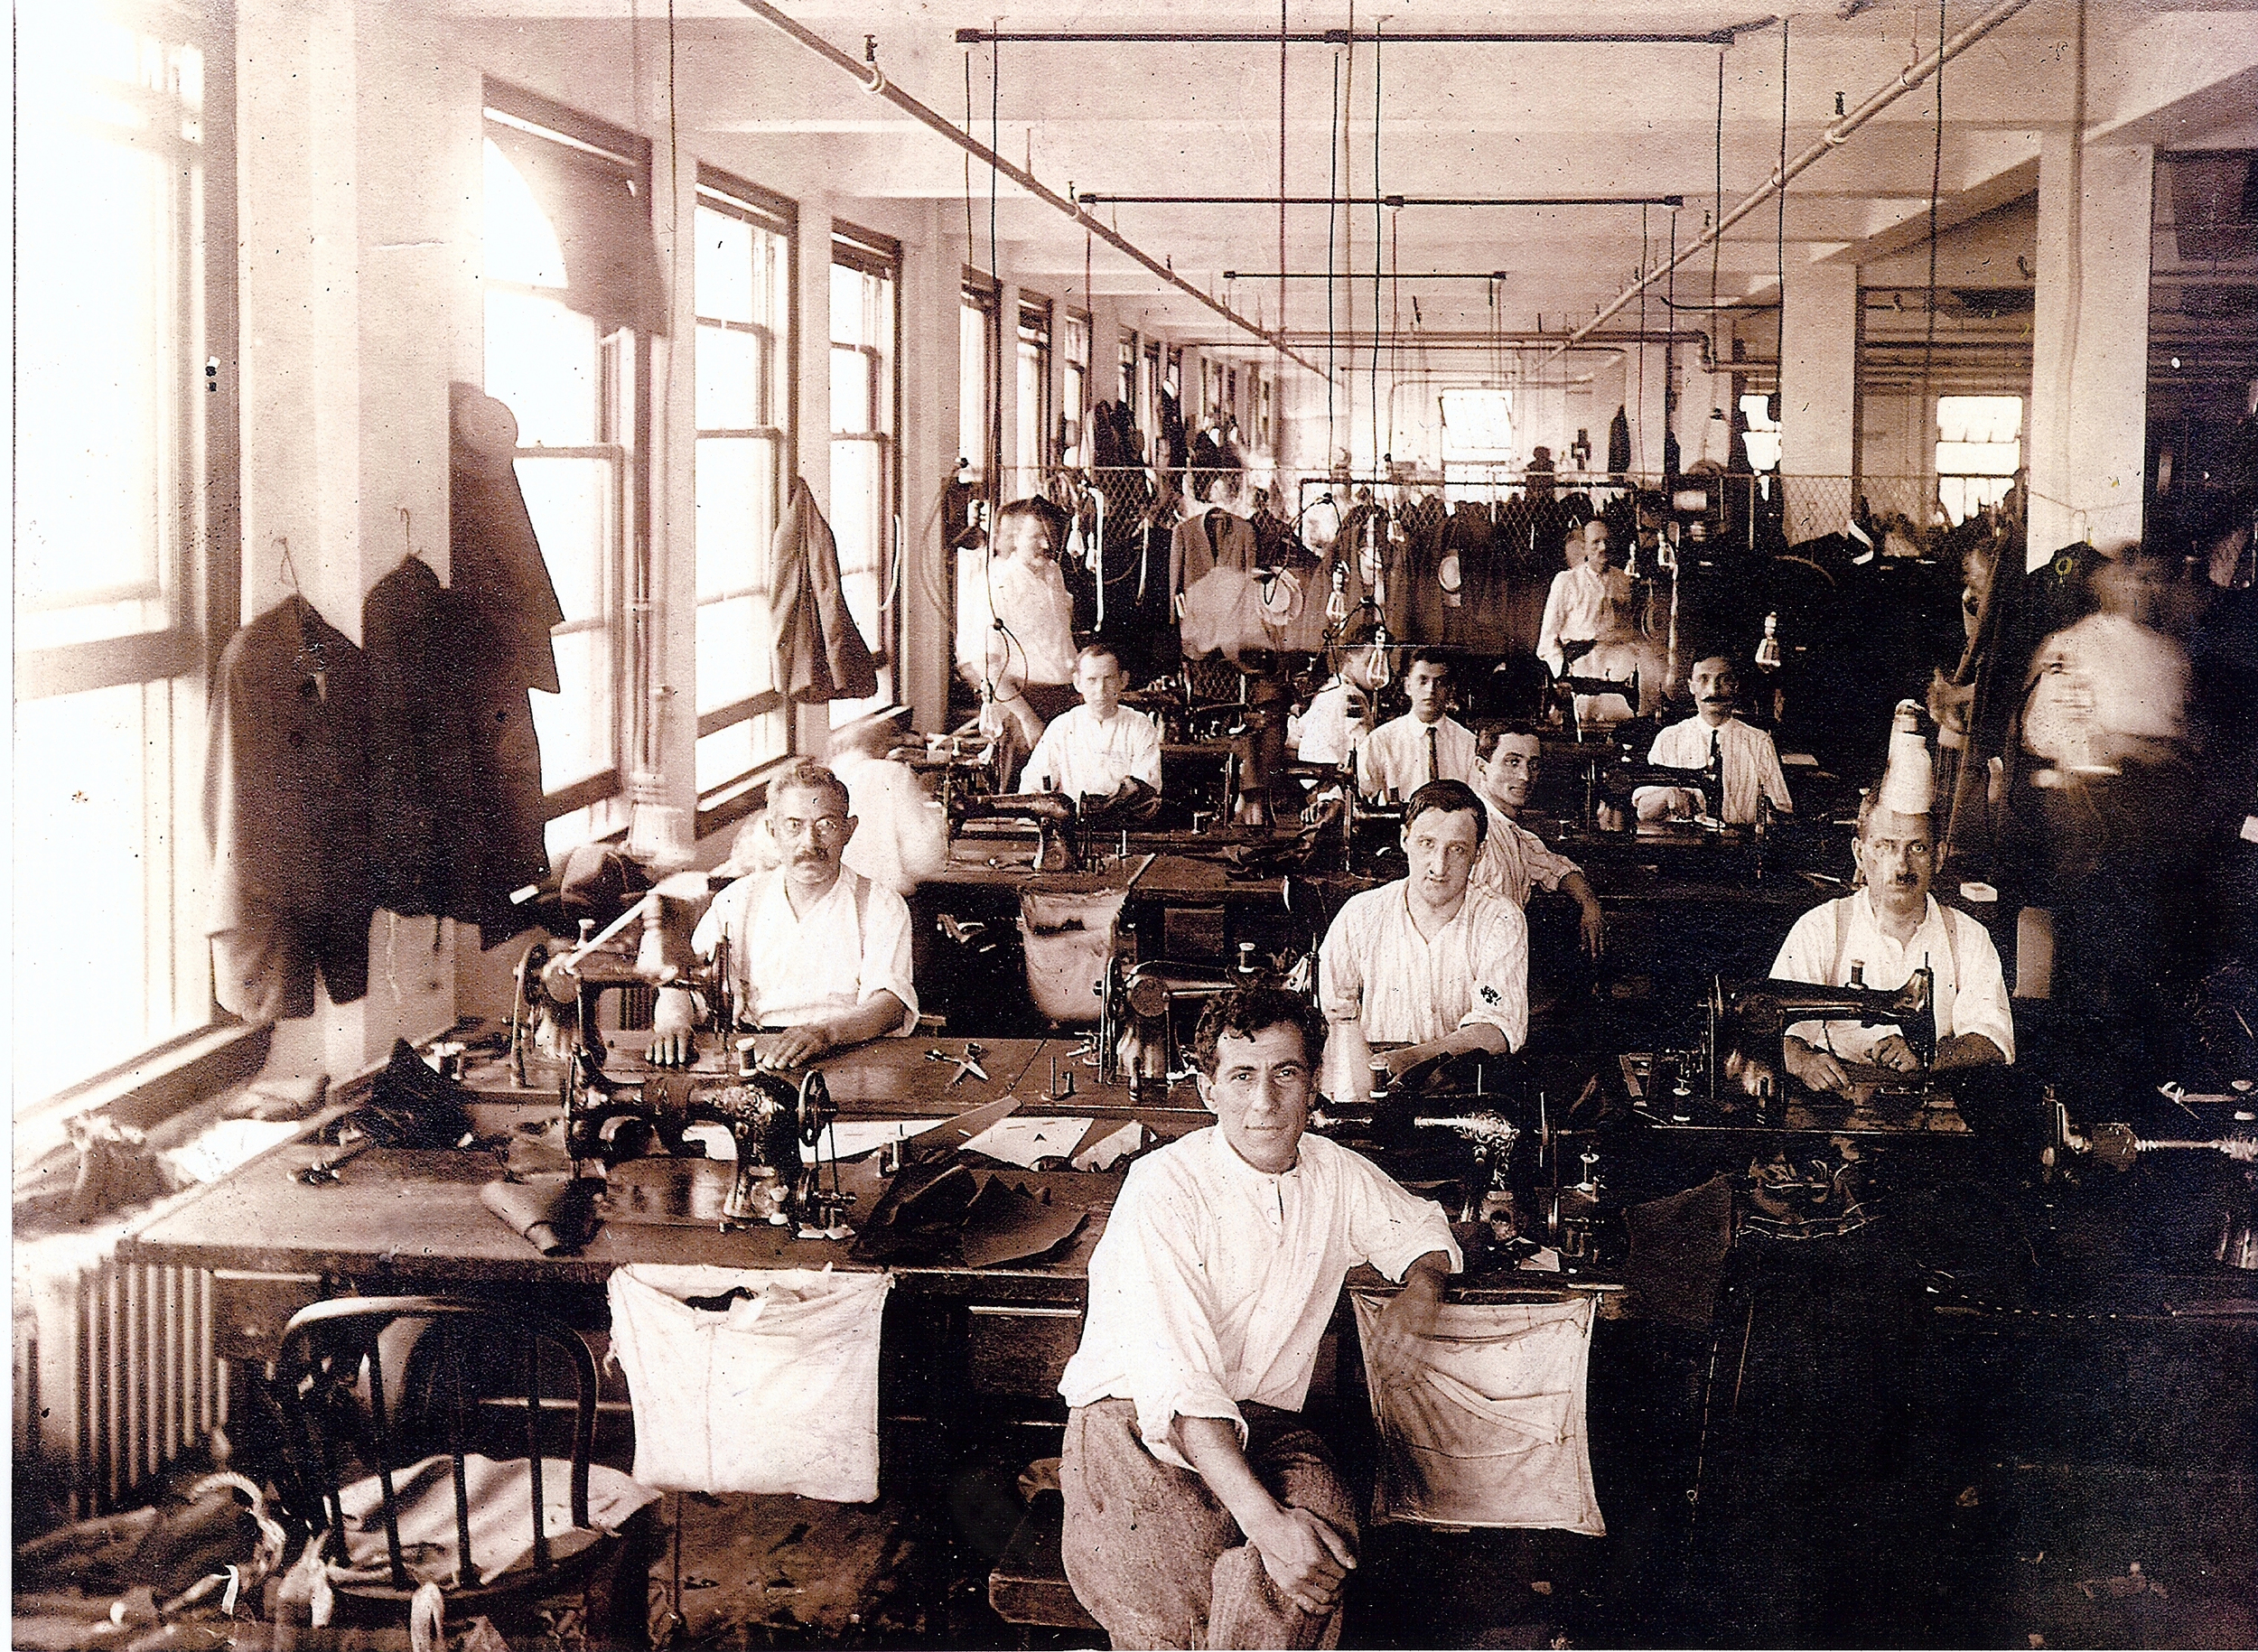 garment workers.jpg